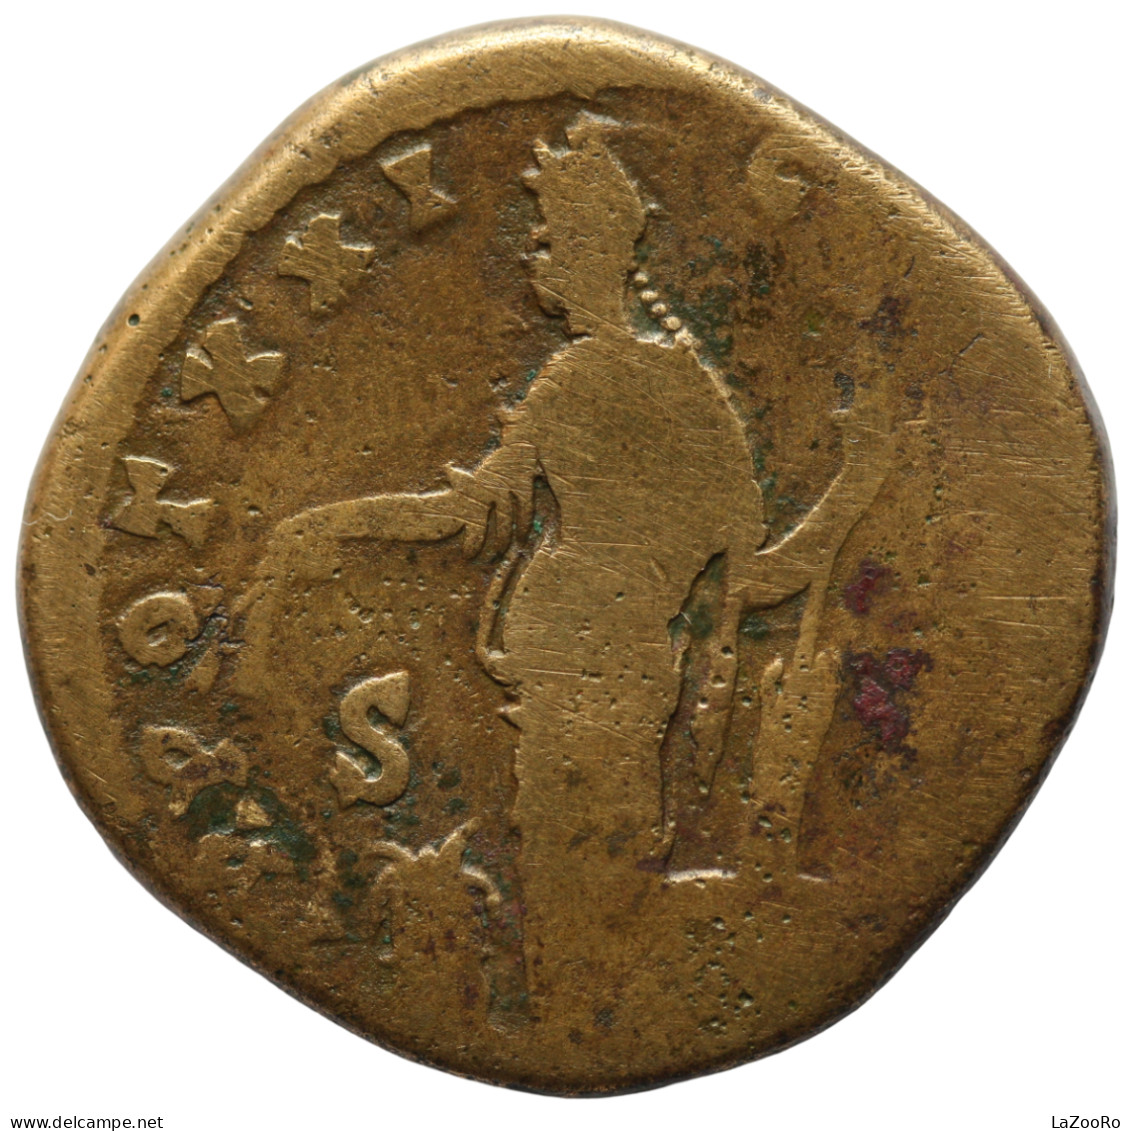 LaZooRo: Roman Empire - AE Sestertius Of Antoninus Pius (138 - 161 AD), Annona - The Anthonines (96 AD To 192 AD)